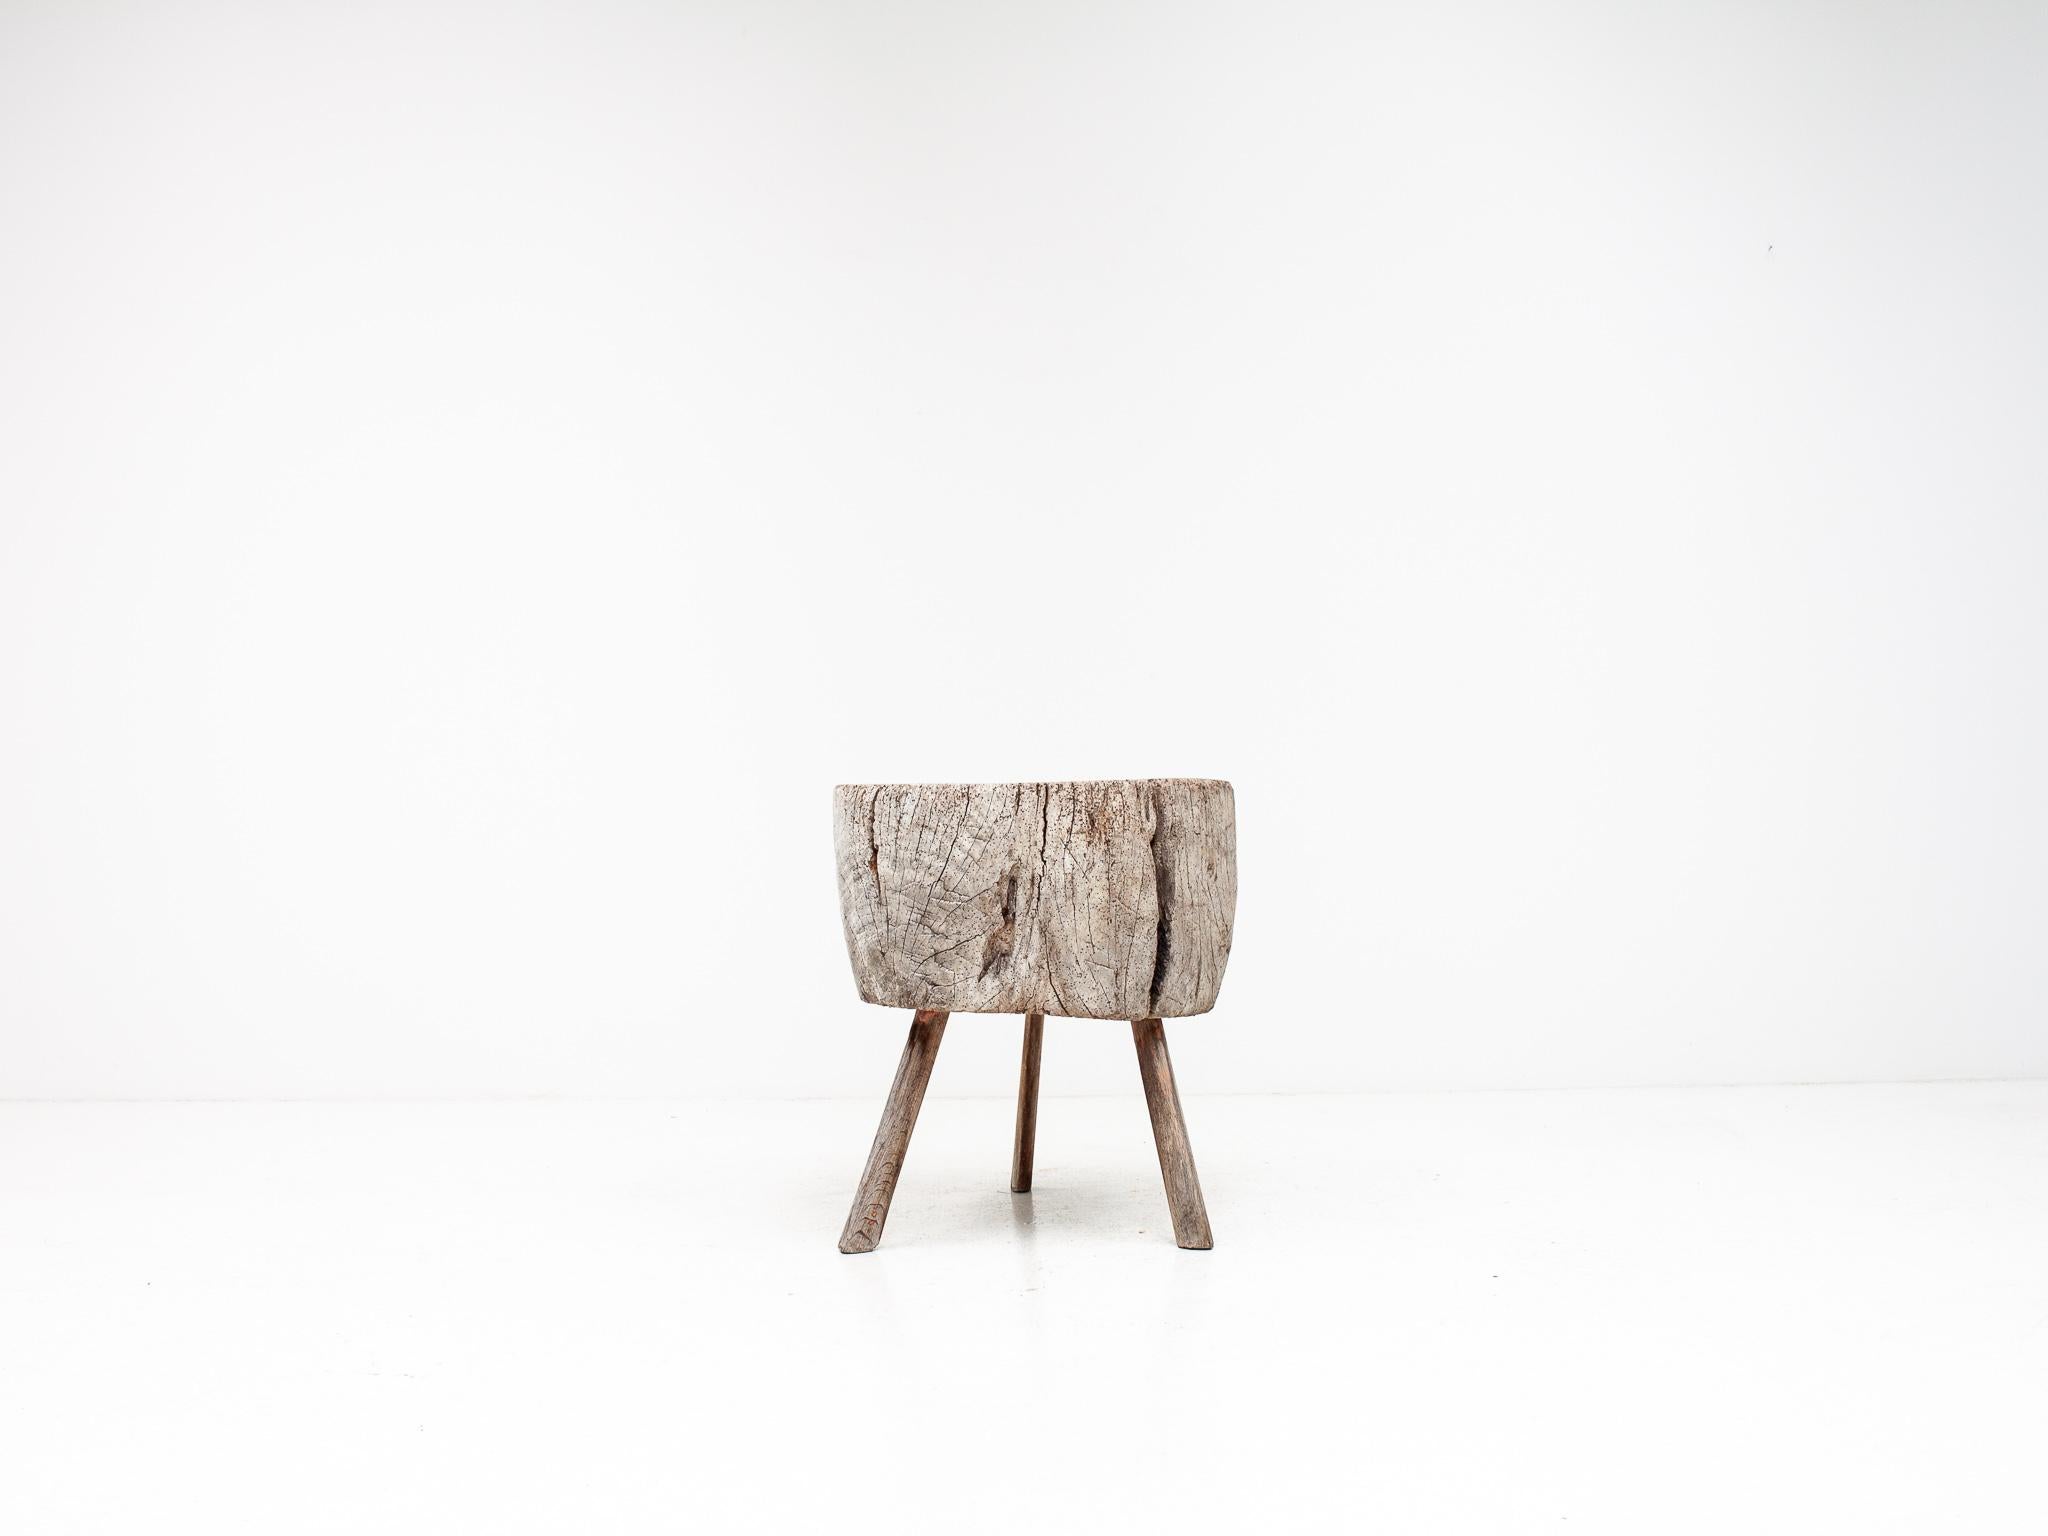 Ein rustikaler Hackklotz aus Eiche, der sich perfekt als Tisch oder Konsole eignet.  Auf drei Beinen stehend und aus Eichenholz mit einer übergroßen Platte geformt, hat das Stück eine große Ästhetik.  Datiert aus den 1800er/Anfang 1900er